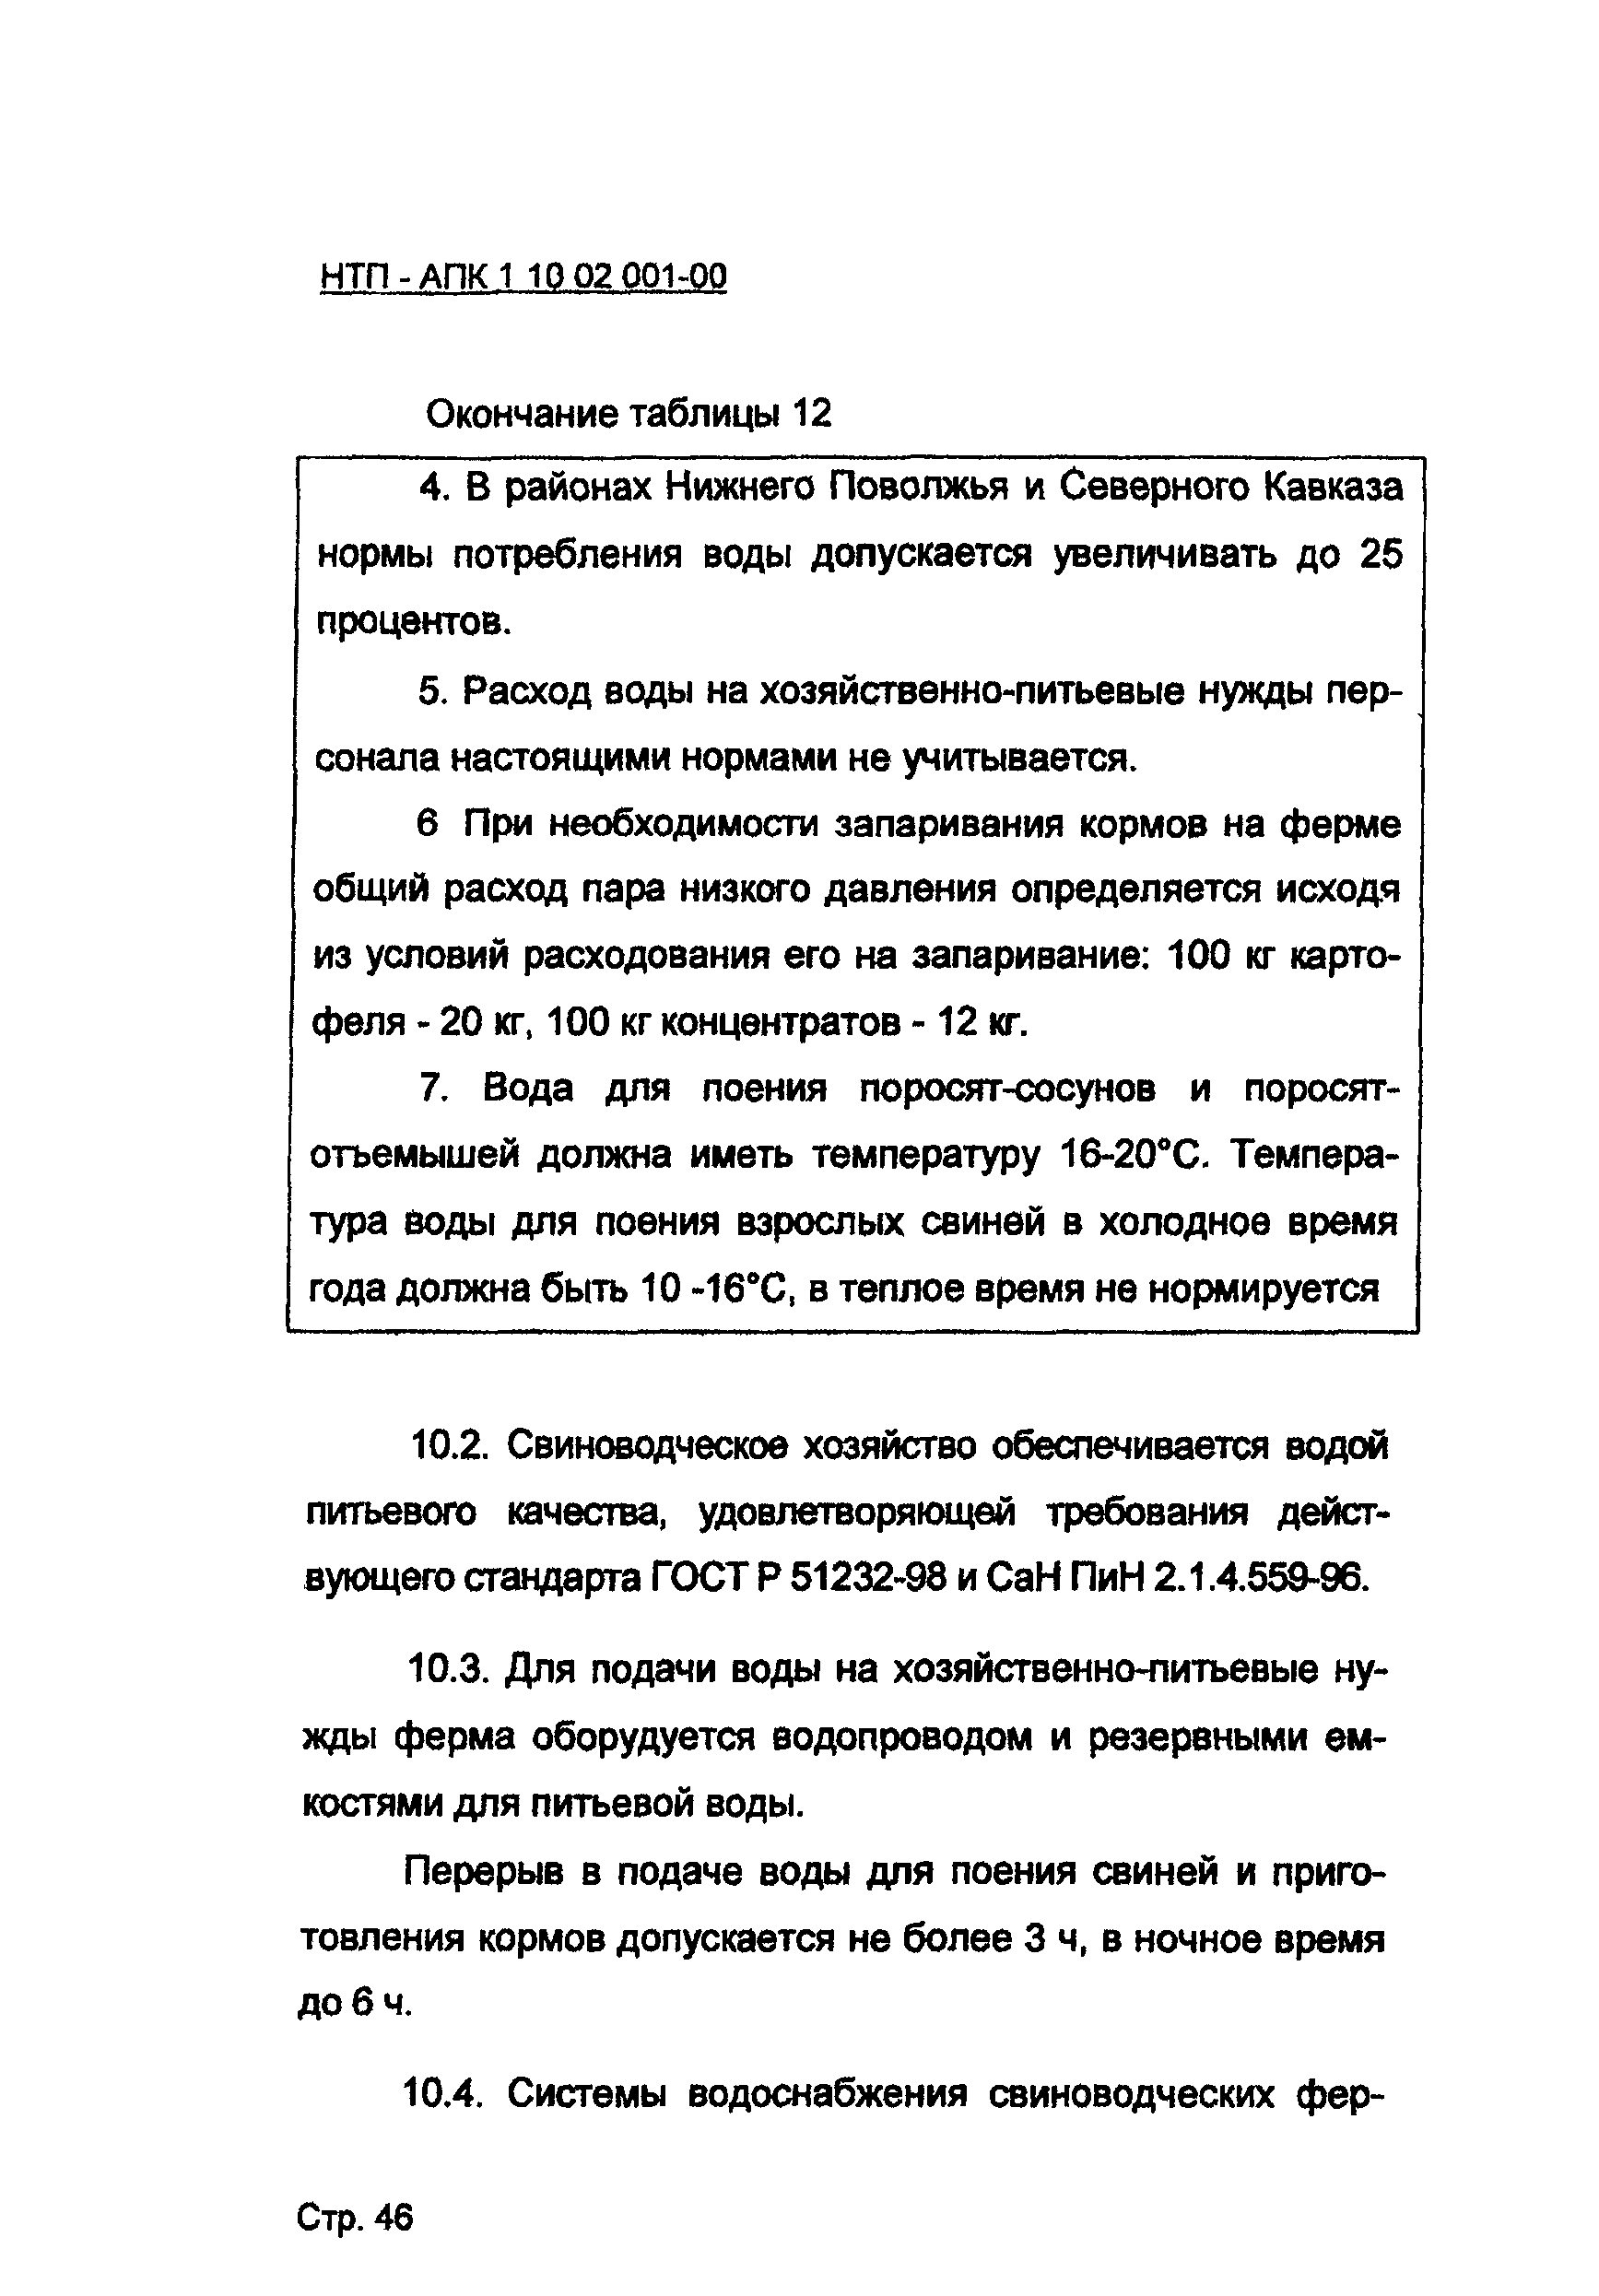 НТП-АПК 1.10.02.001-00